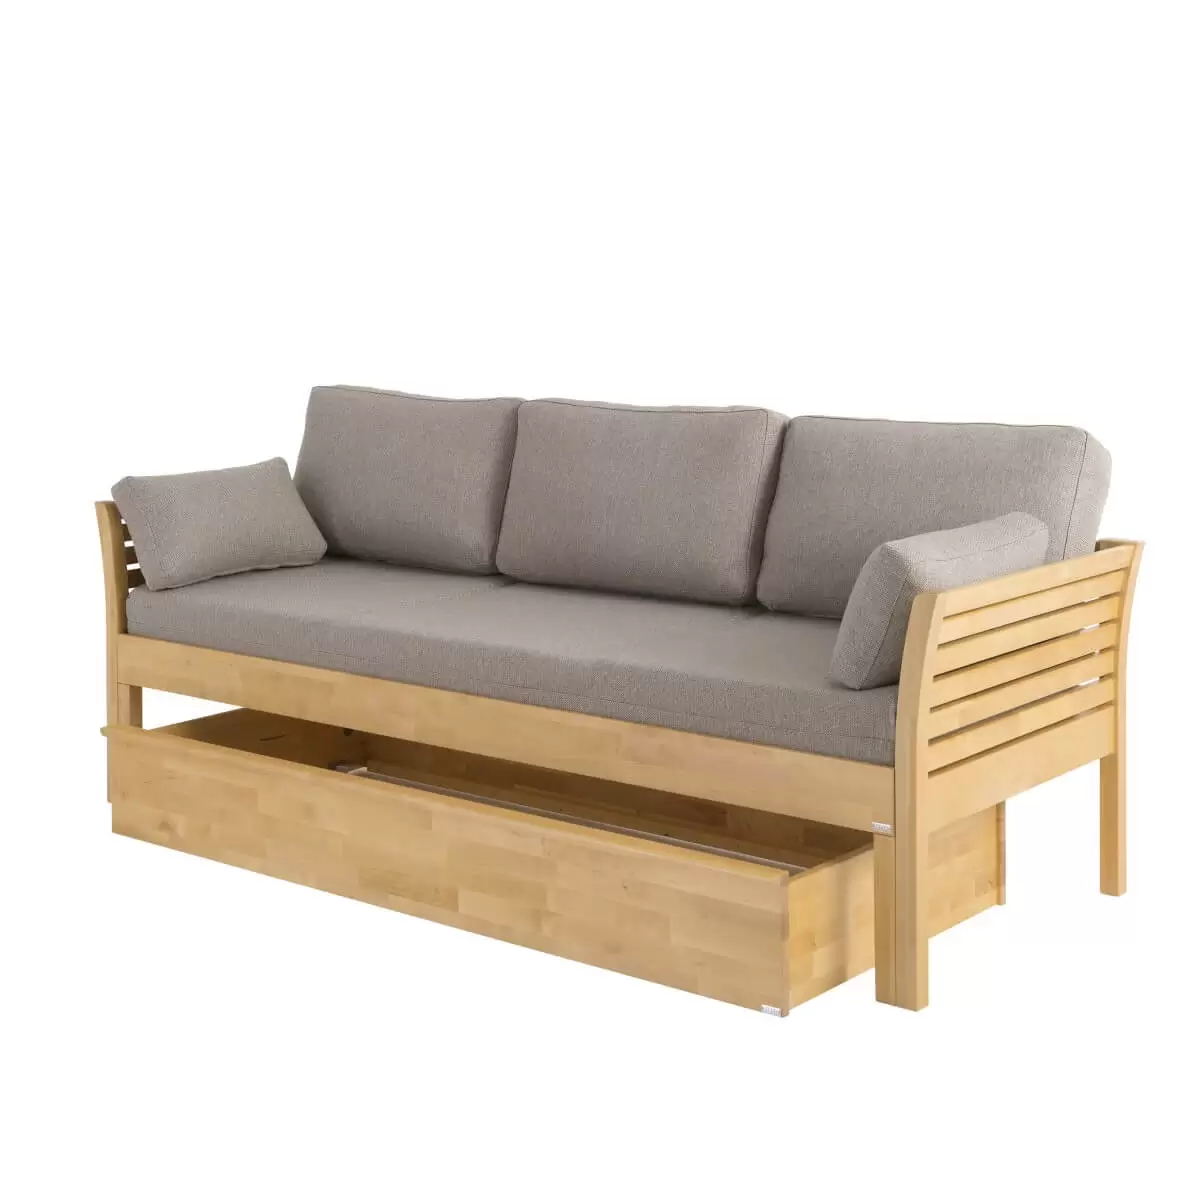 Sofa skandynawska z funkcją spania KANERVA kolor buk, z beżowym materacem i pięcioma poduszkami. Pod sofą drewniany pojemnik na pościel w kolorze buku.